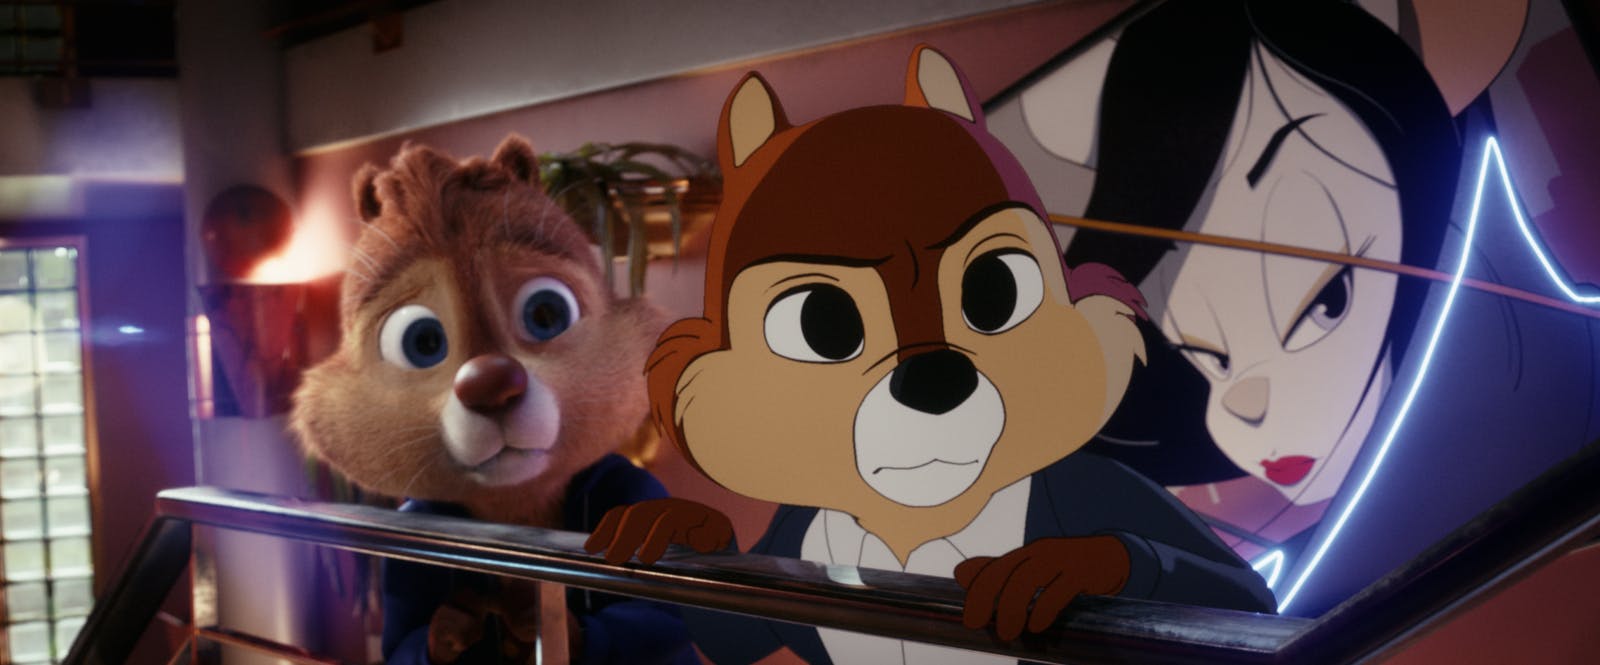 Piff och Puff ser bekymrade ut i Disneys nya film Piff och Puff: Räddningpatrullen. 